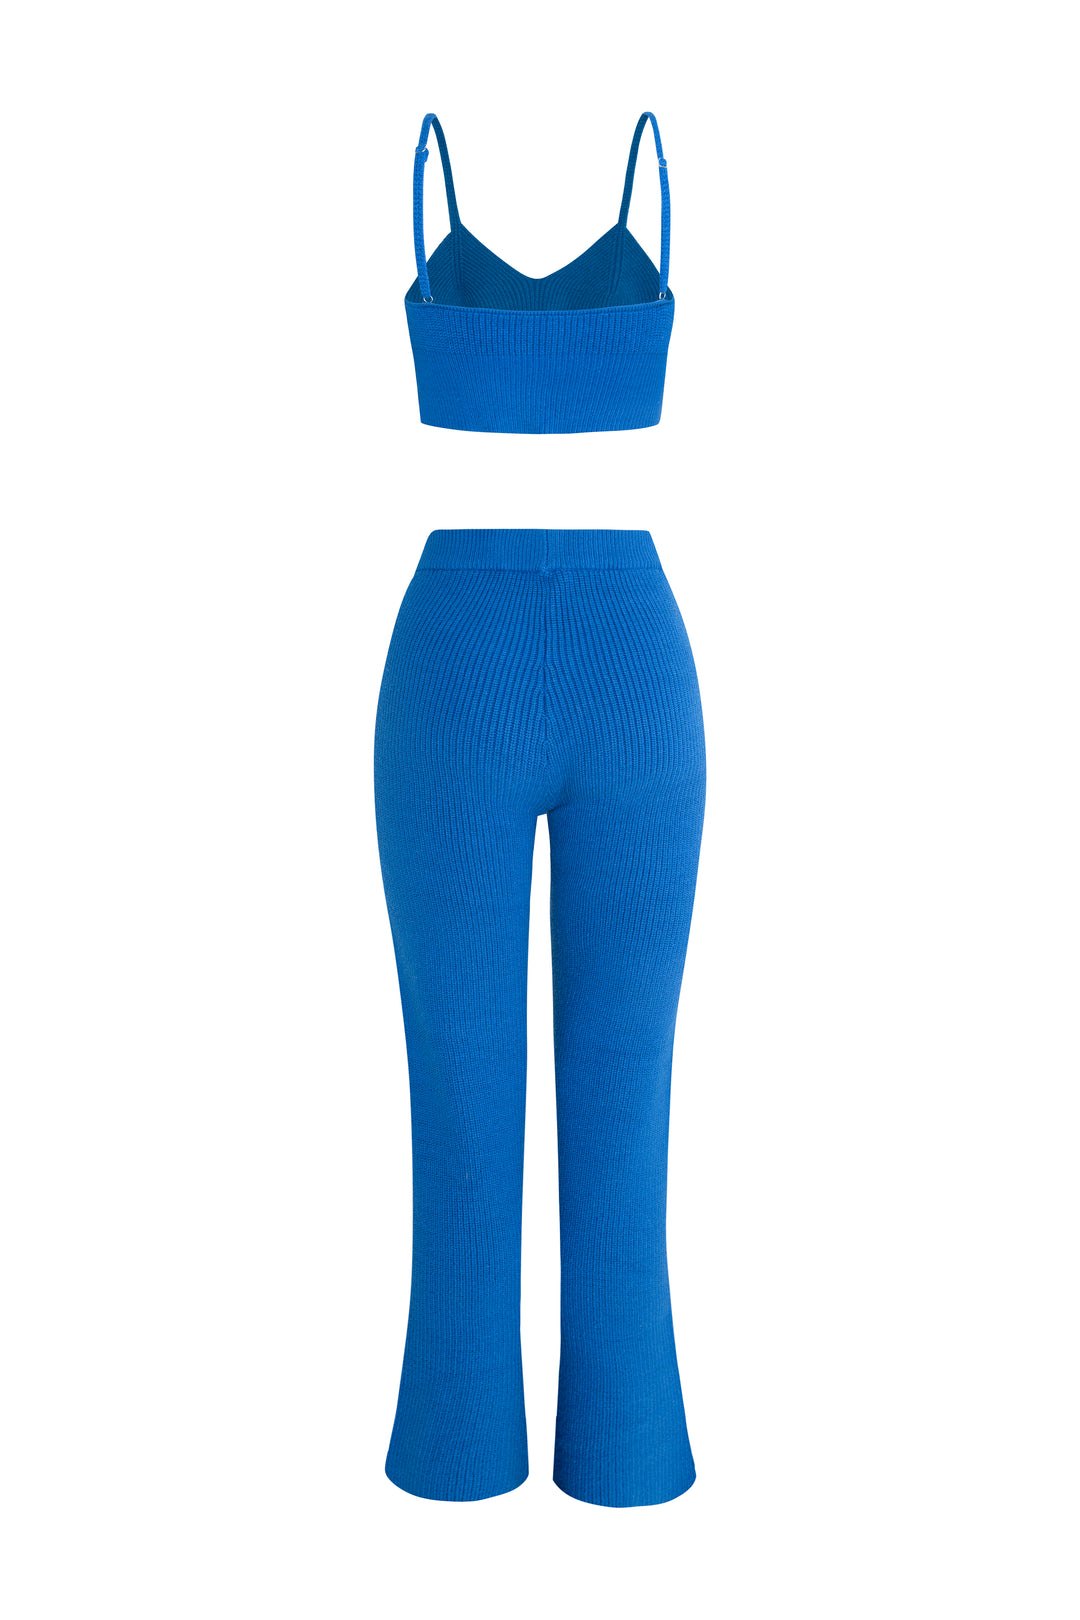 Azul - Conjunto de ropa de estar por casa con pantalón de punto con dobladillo dividido “Otoño”, jersey corto con doble cremallera y bralet